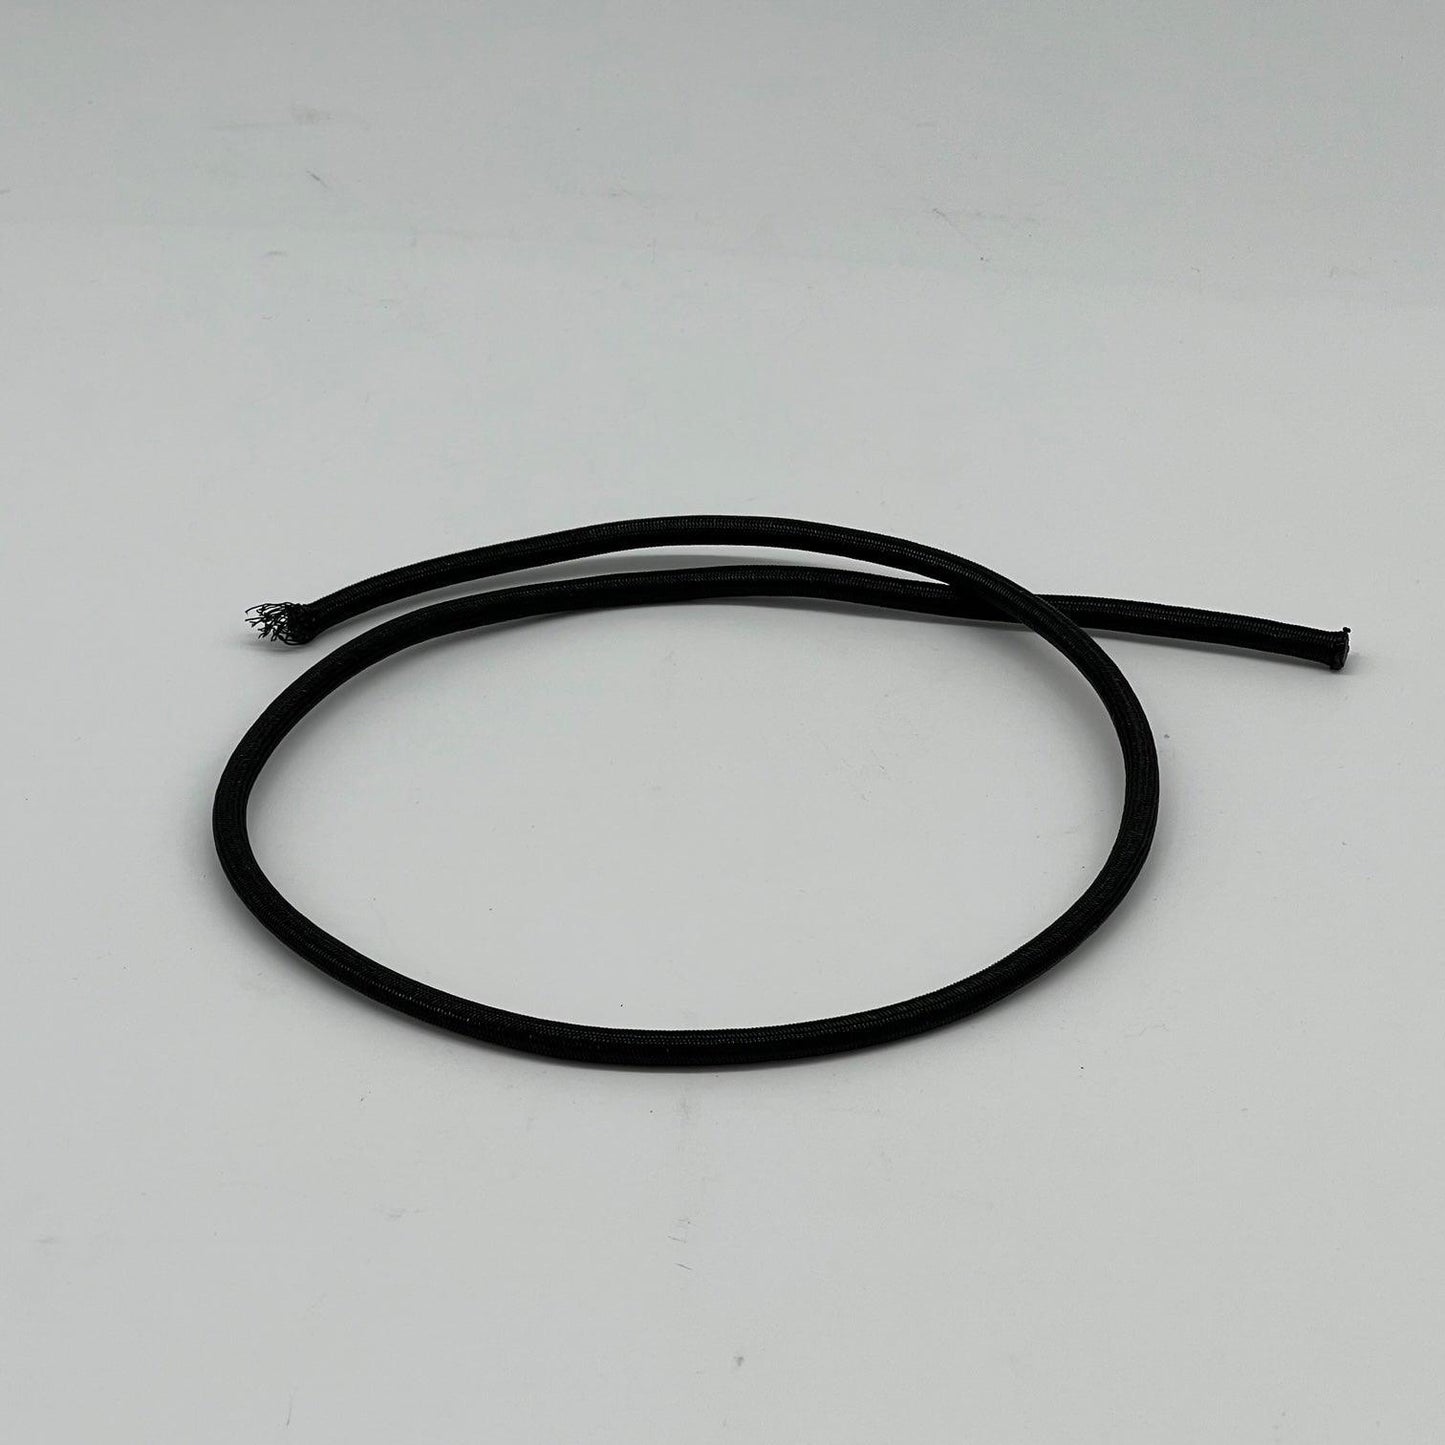 Bungee elastiek zwart 6mm per/m1 - Roveroshop